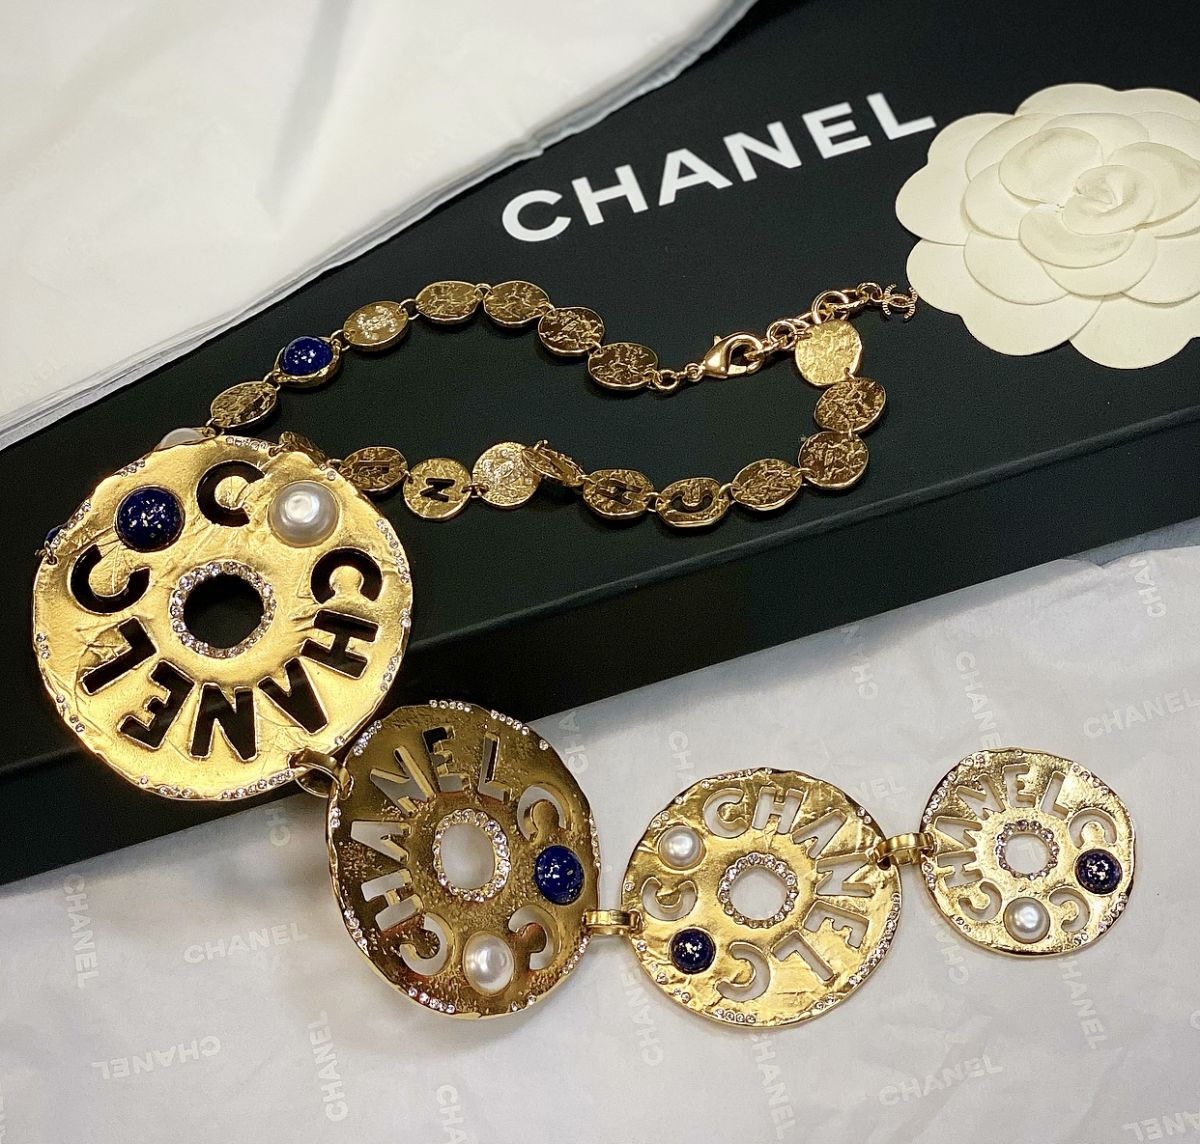 Колье / камни / жемчуг / Chanel цена 92 310 руб 